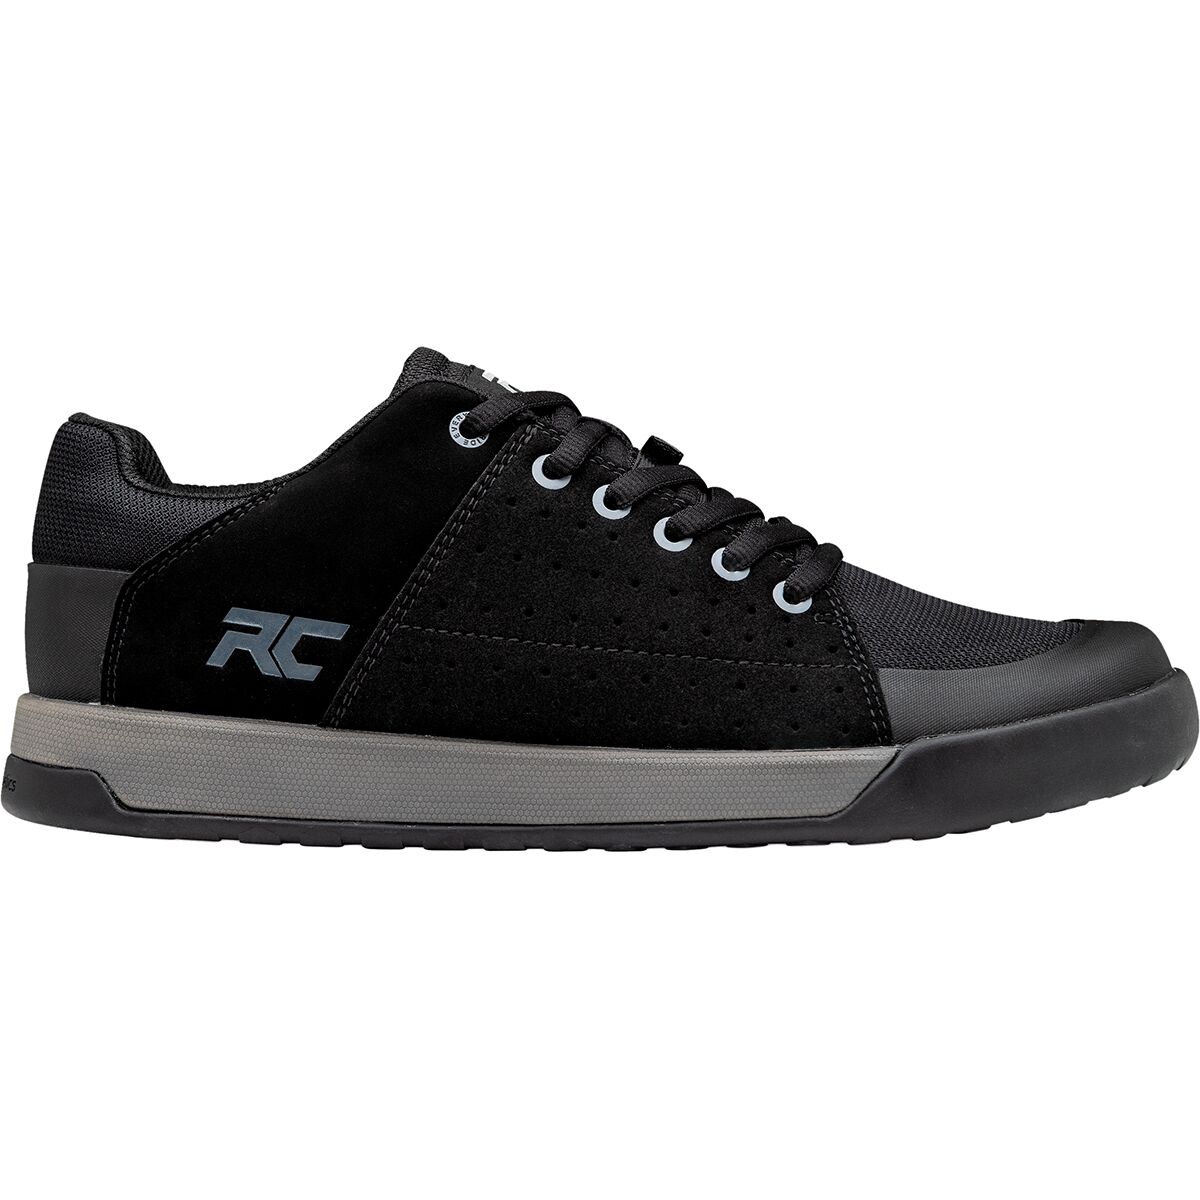 Ride Concepts Men's Livewire Shoes Black/Charcoal Size 11 